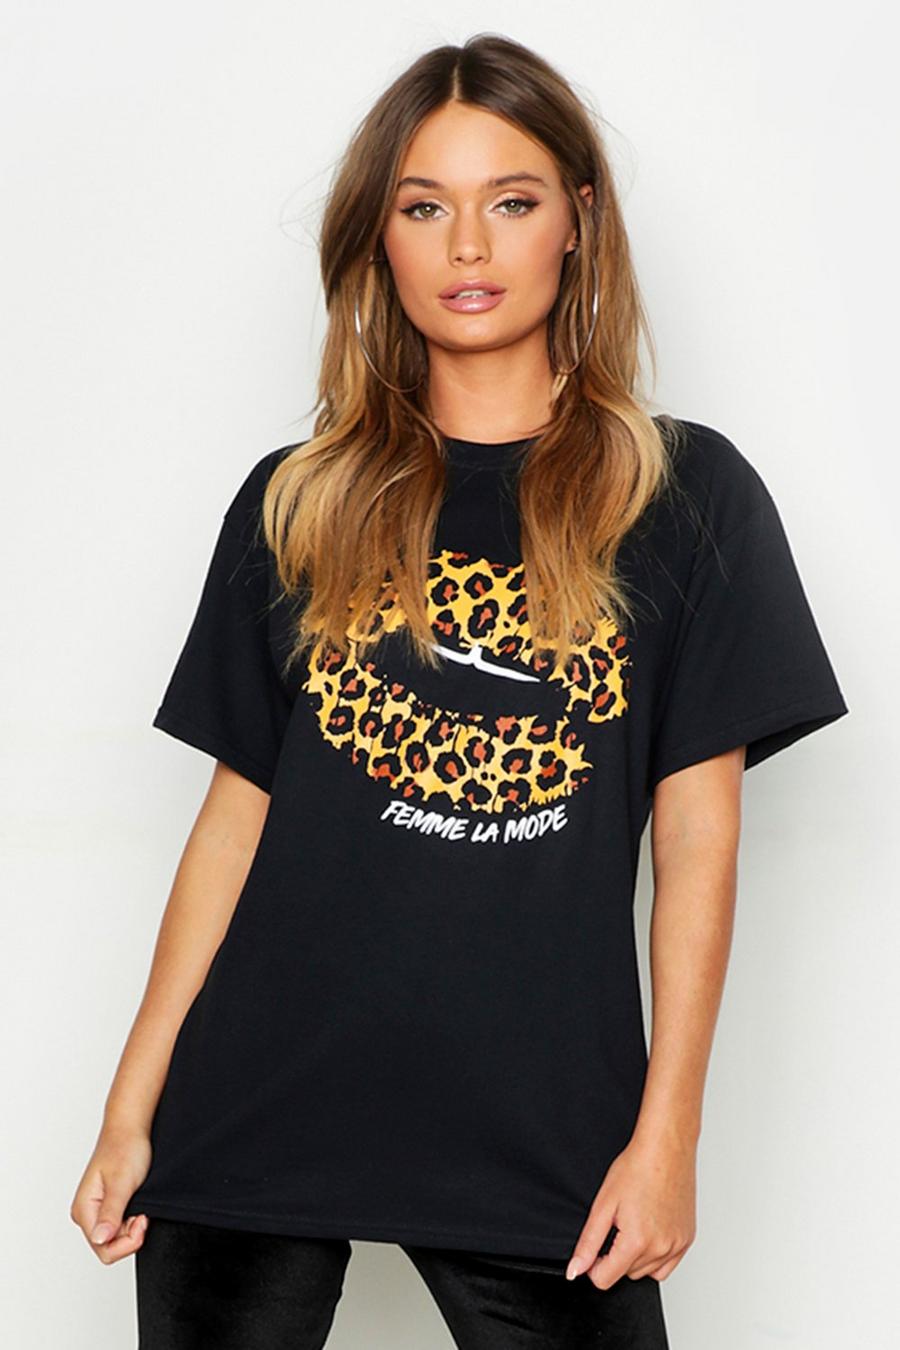 Camiseta con estampado de leopardo en forma de labios y eslogan “Femme”, Negro nero image number 1